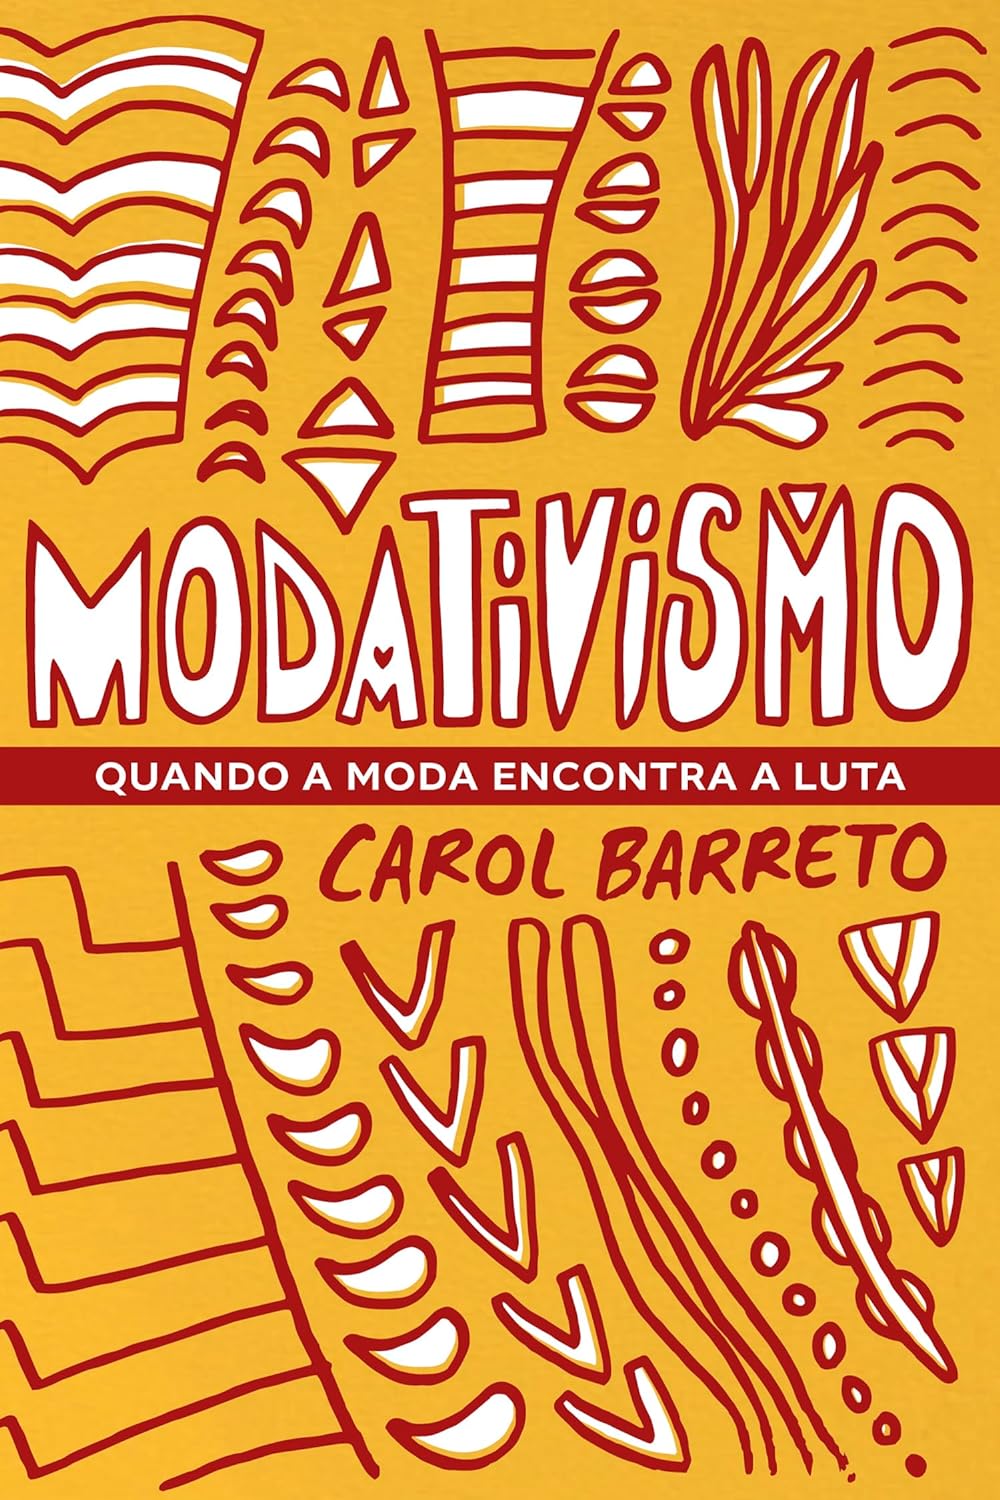 Livro-manifesto retrata movimento criado há 10 anos pela artista baiana Carol Barreto